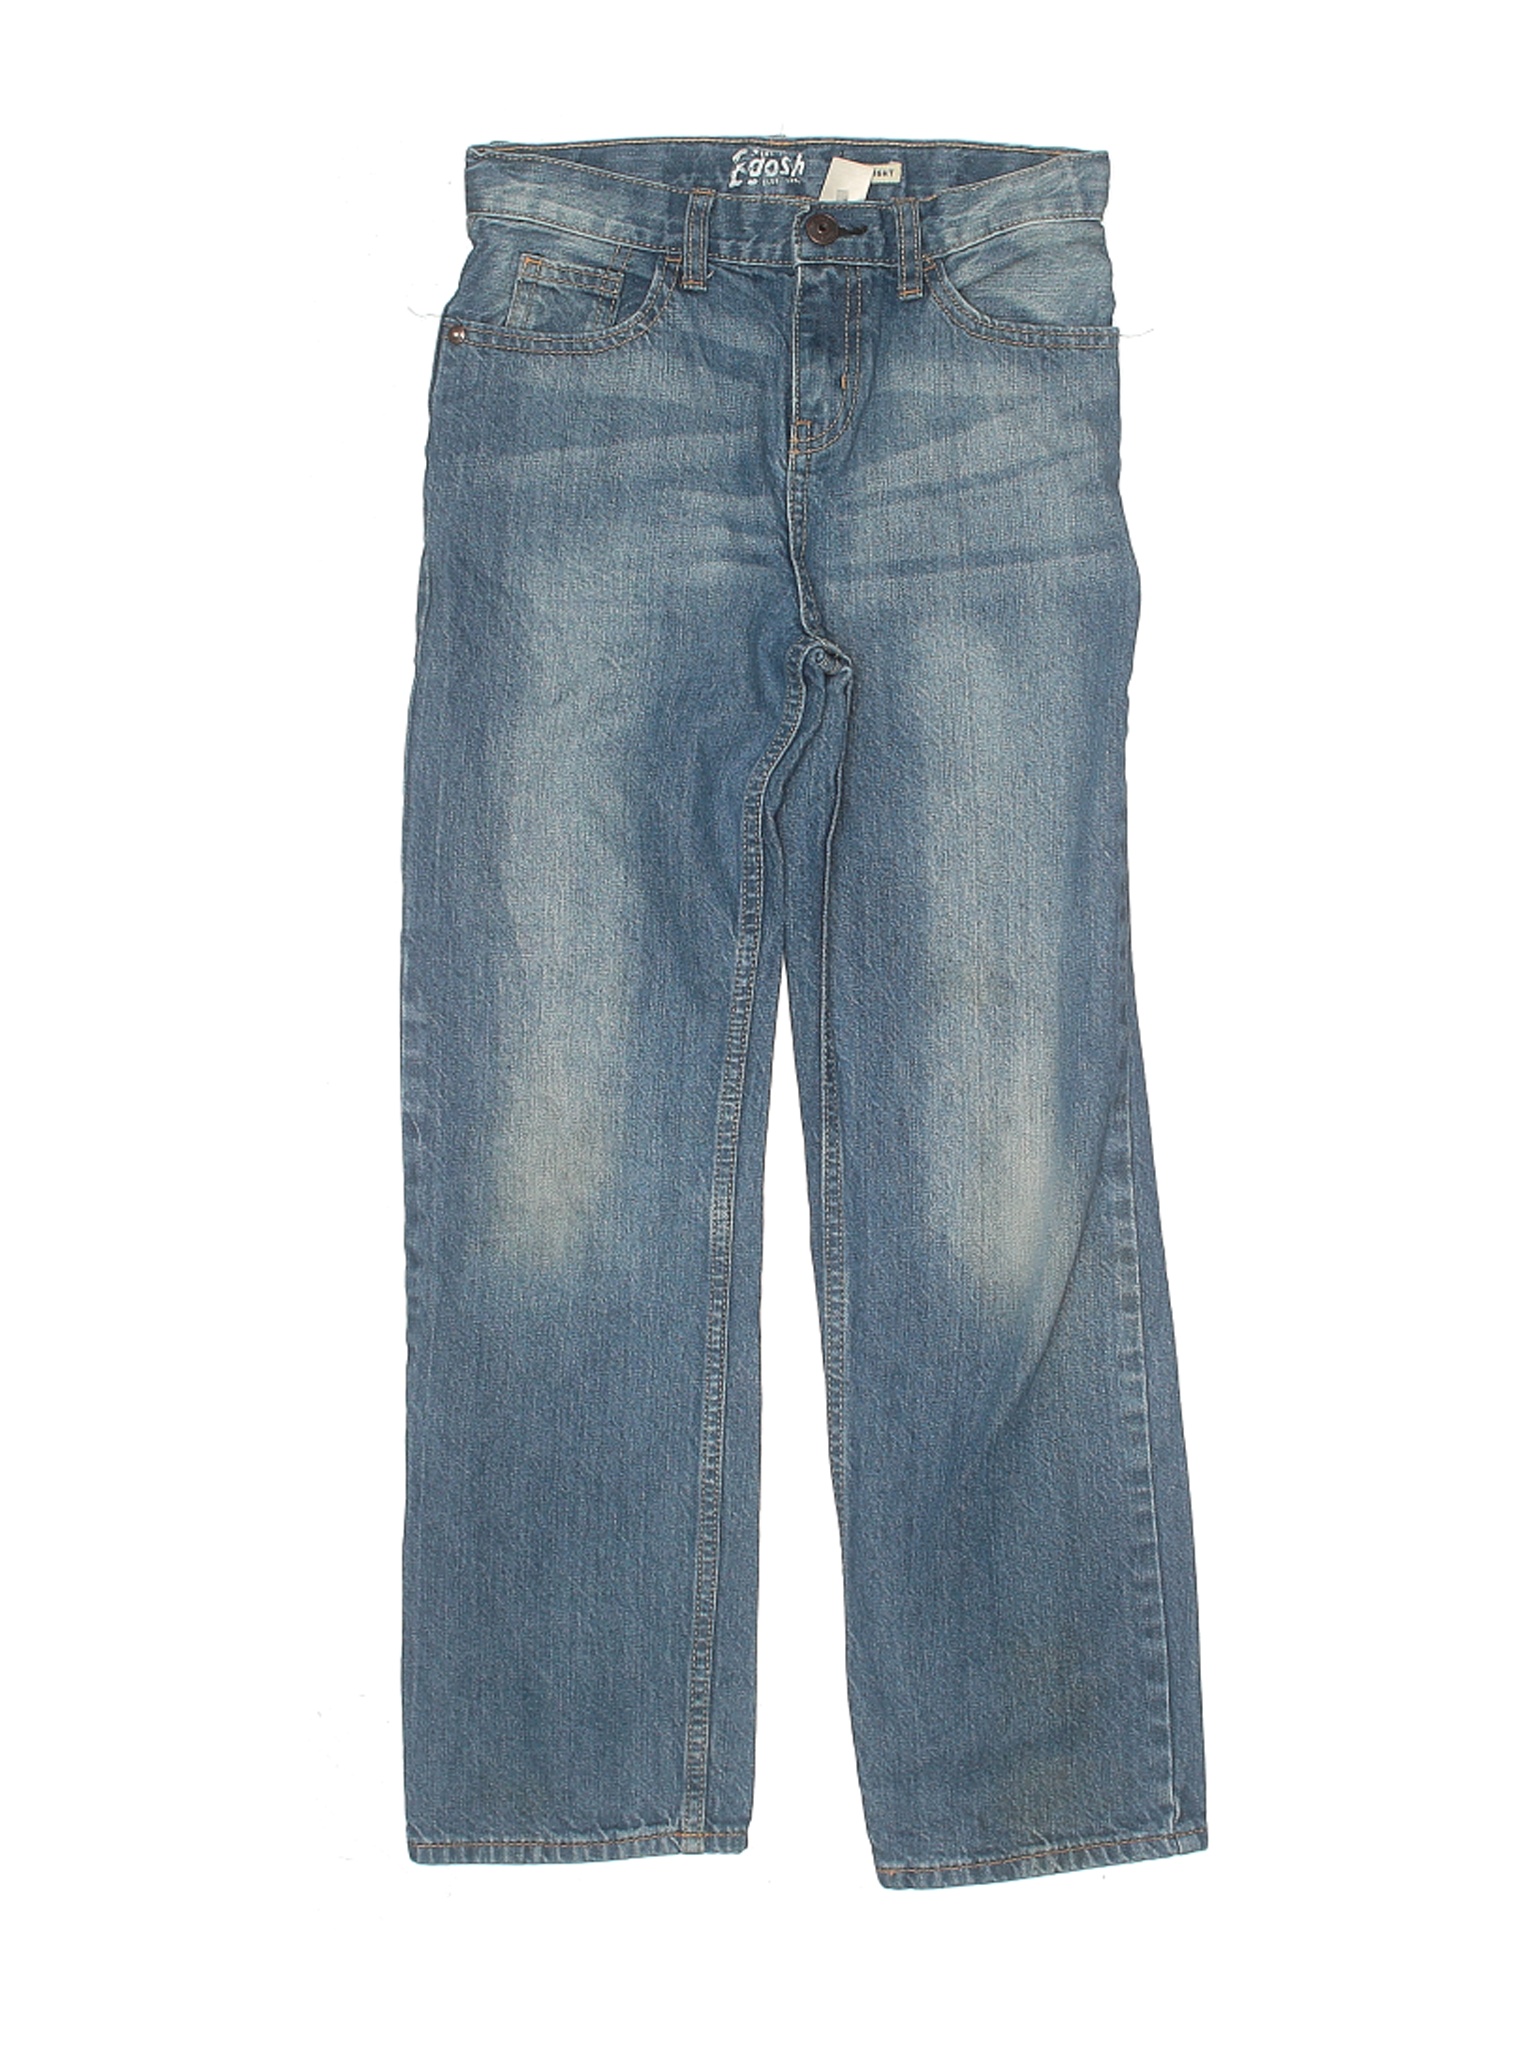 OshKosh B'gosh Boys Blue Jeans 12 | eBay